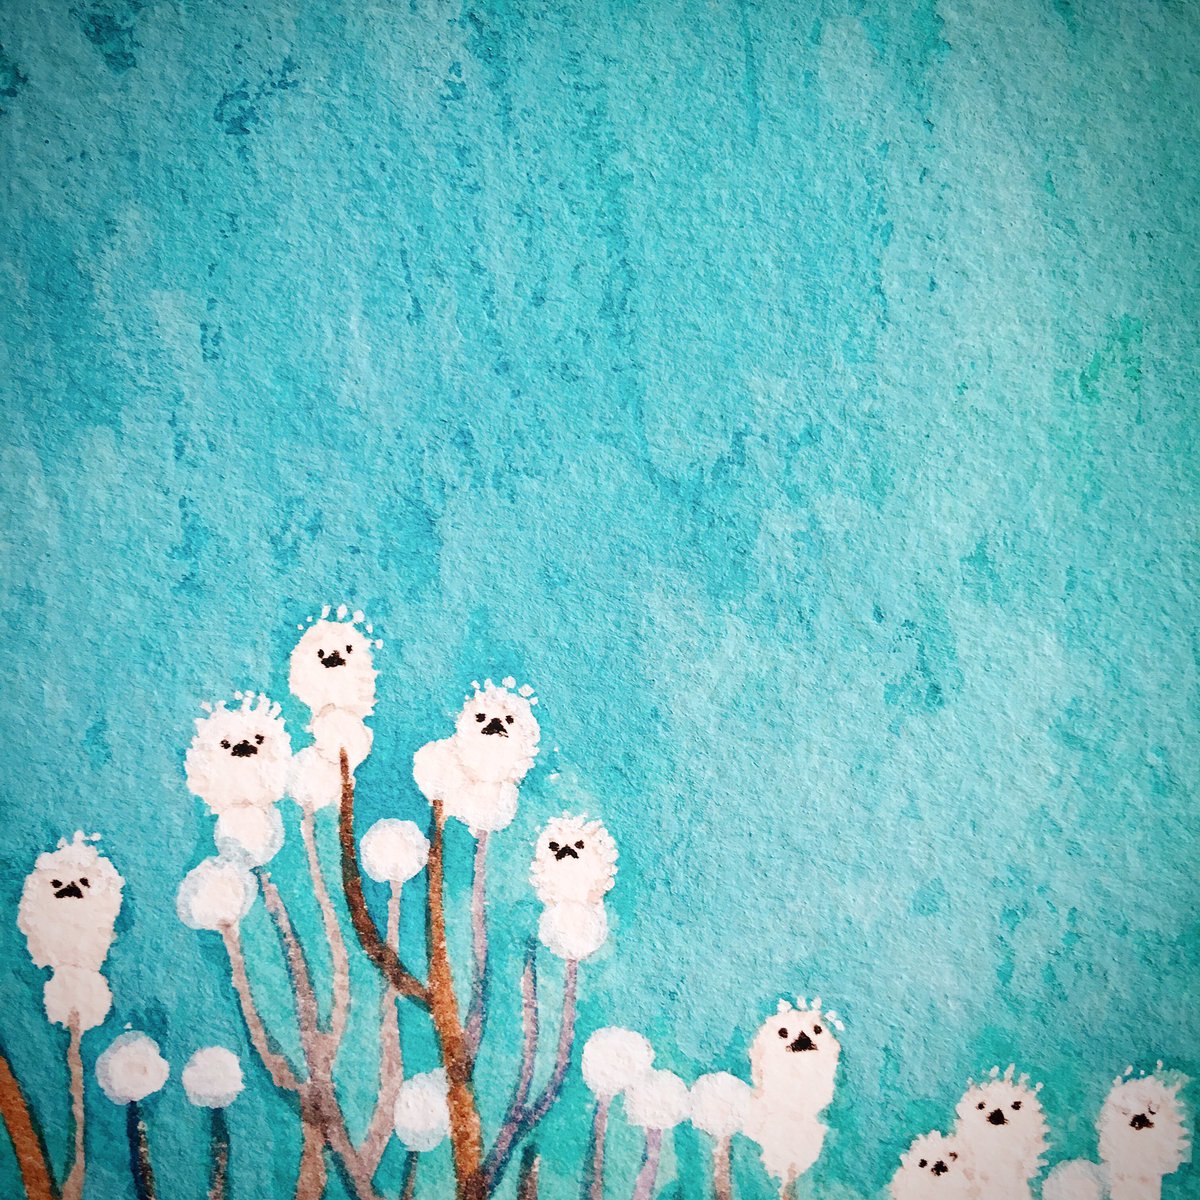 「関東では雪!❄️ 」|おおでゆかこ - イラストレーター 絵本作家のイラスト